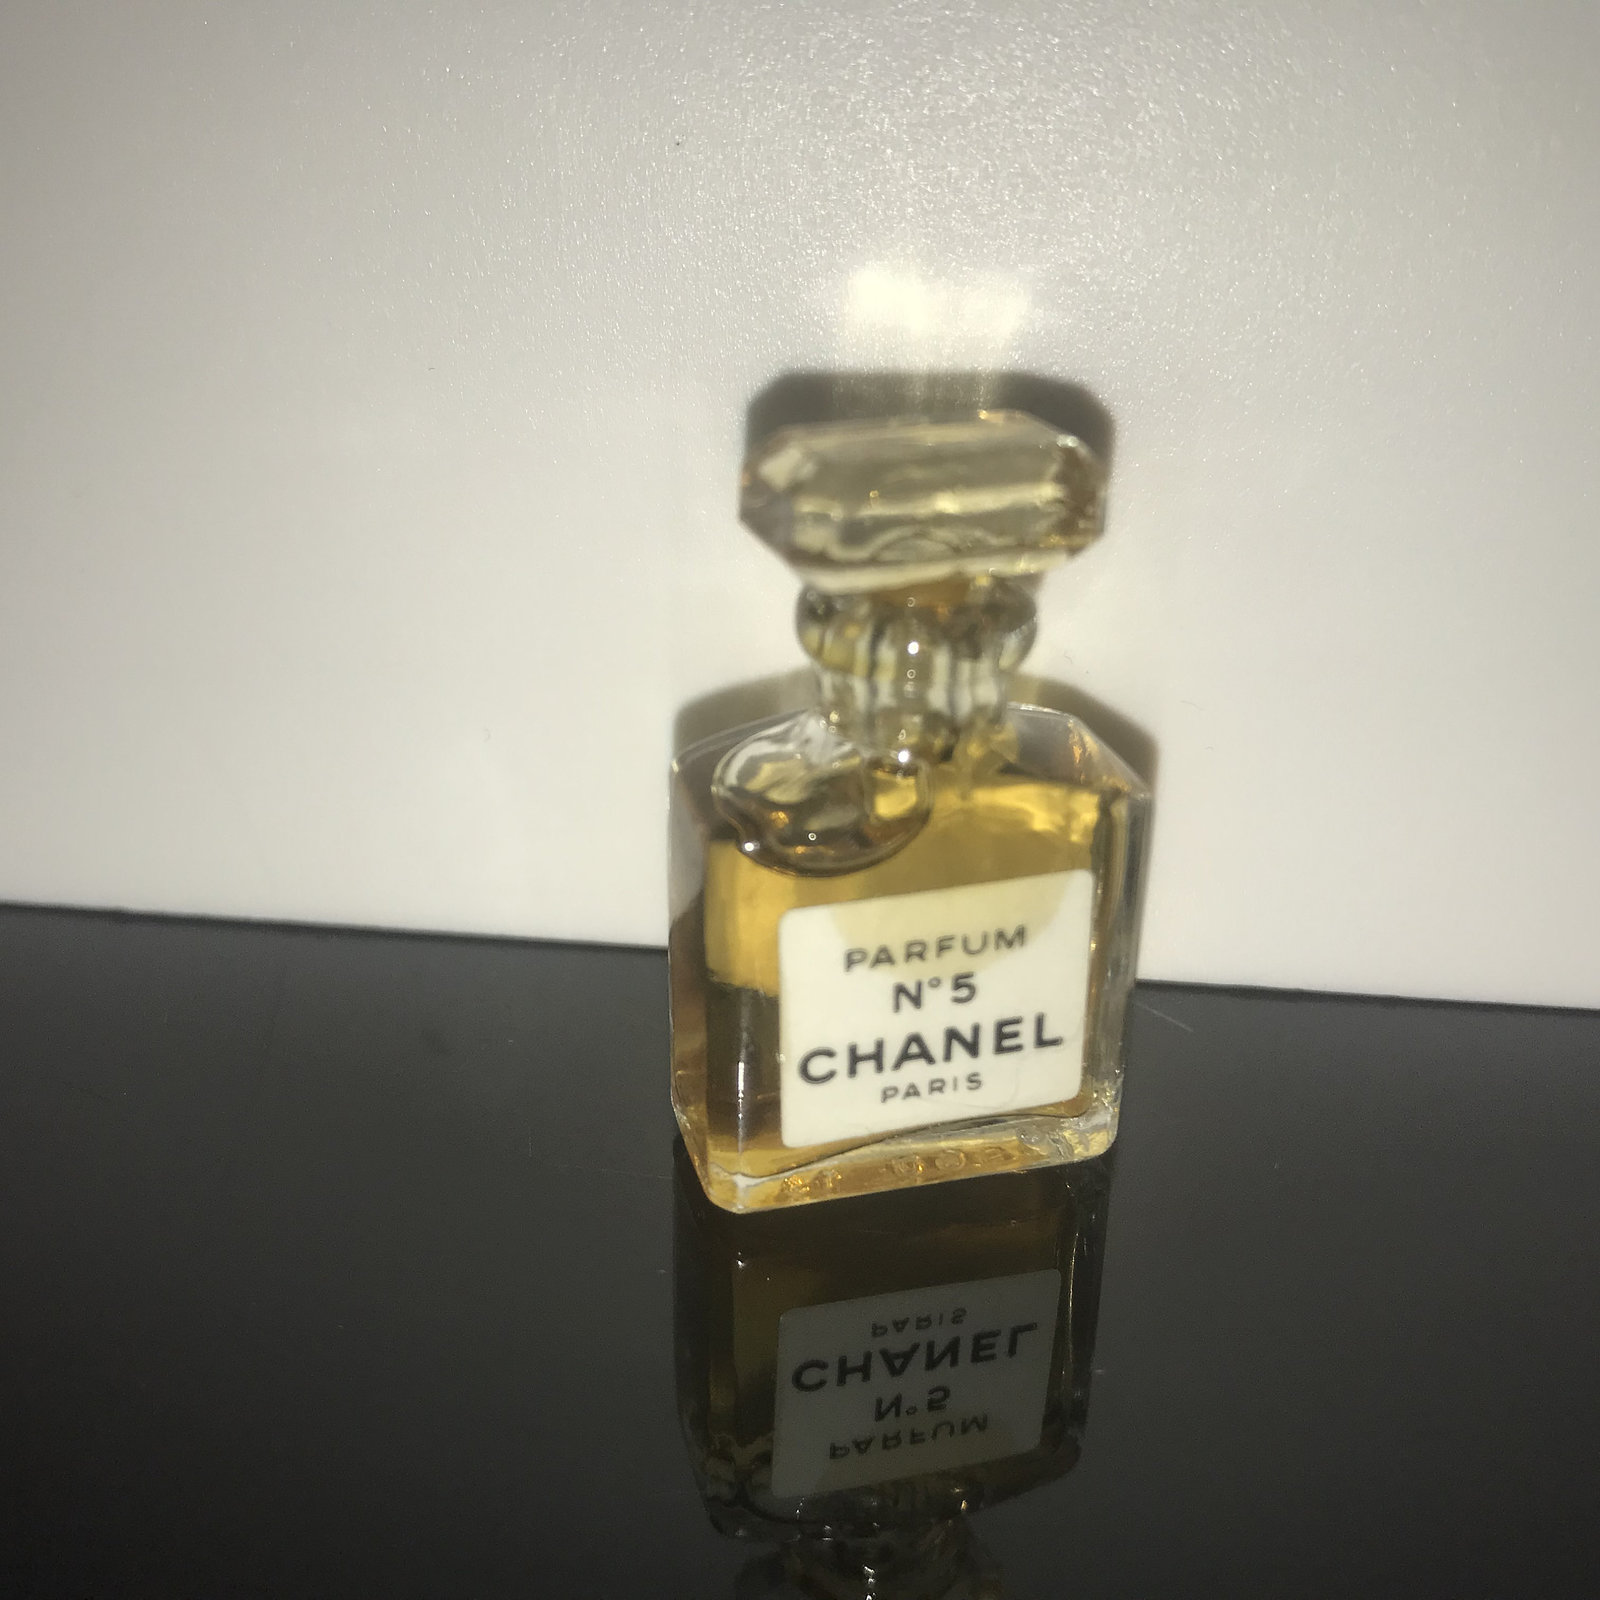 Chanel: 5 (1921)